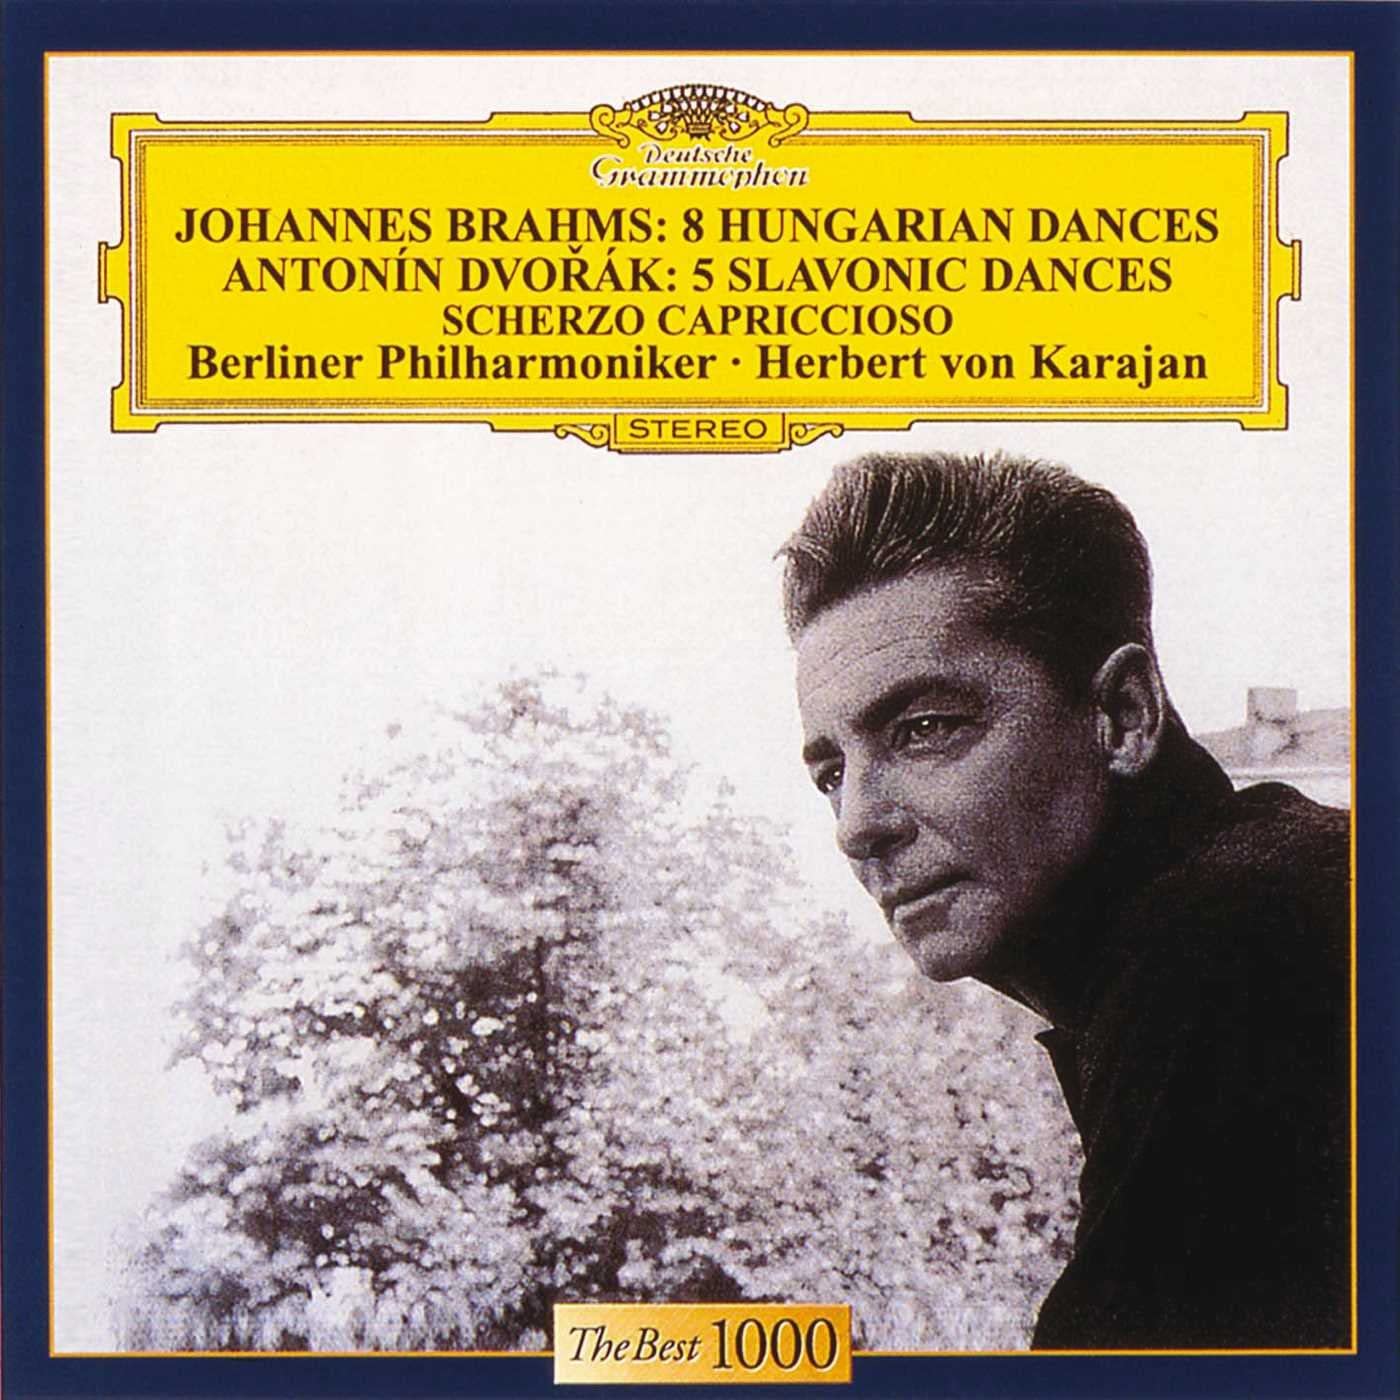 Brahms: 8 Hungarian Dances / Dvorak: 5 Slavonic Dances; Scherzo capriccioso | Berliner Philharmoniker, Herbert von Karajan image0